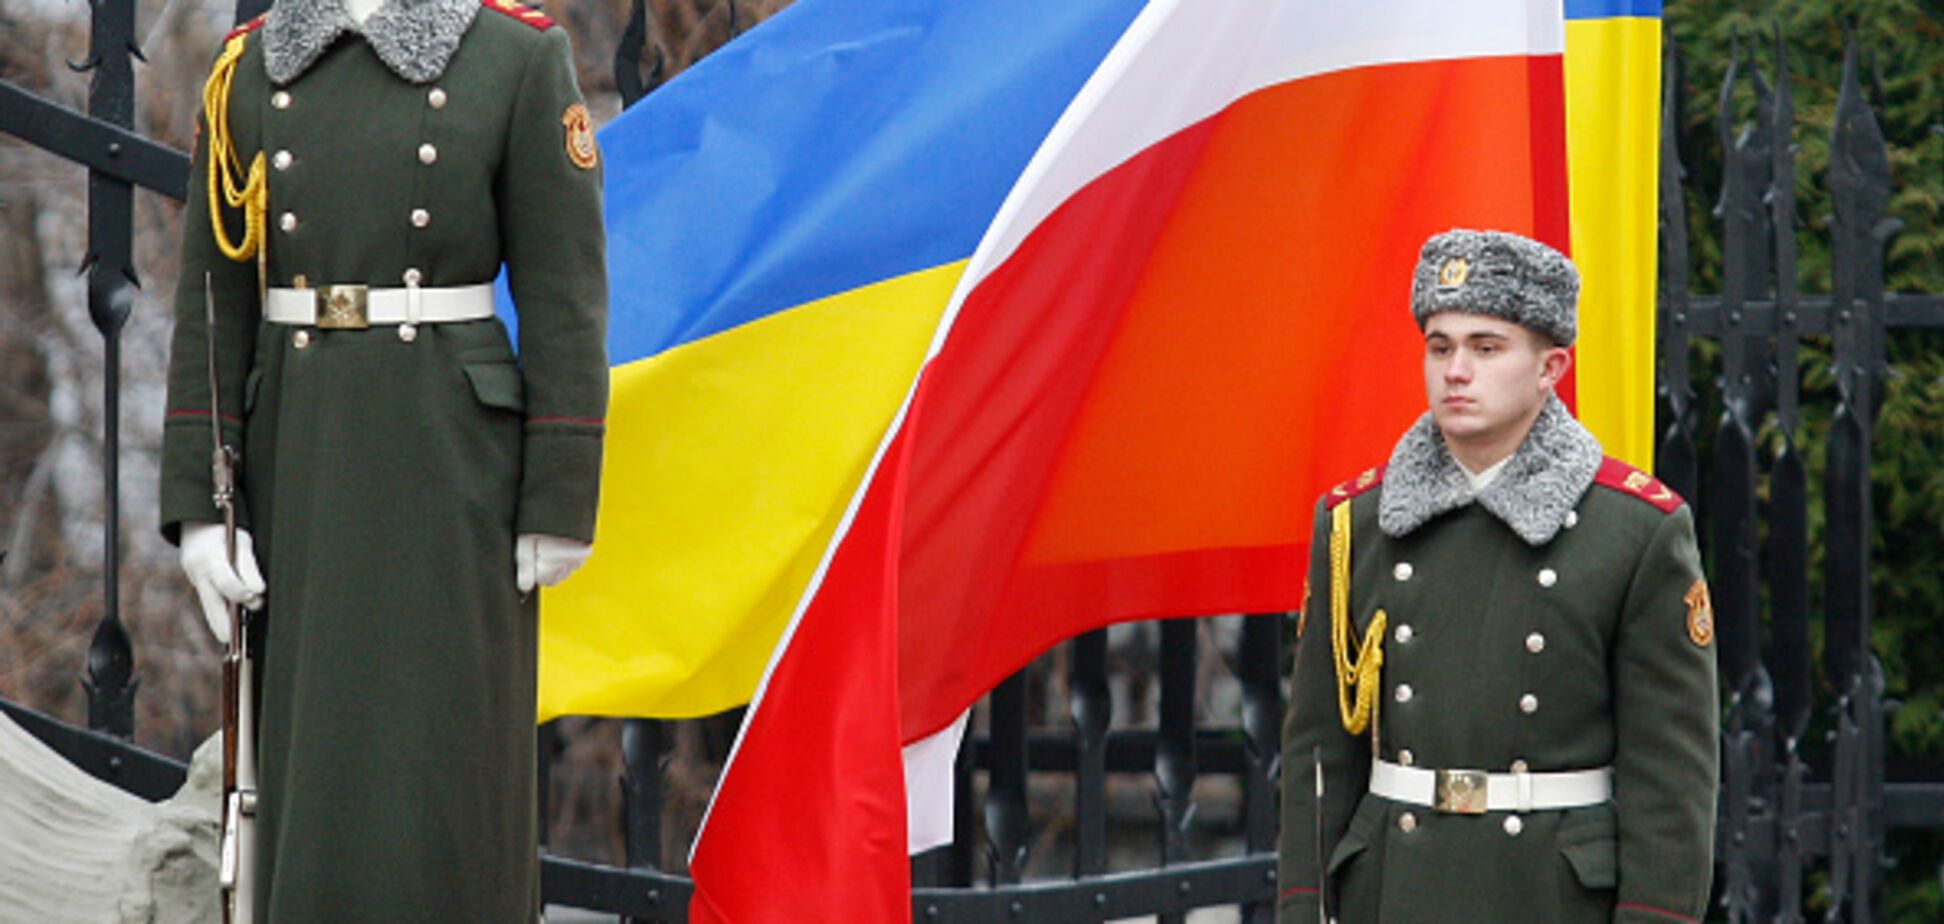 Польша начала 'махать саблей' перед воюющей Украиной - депутат Сейма